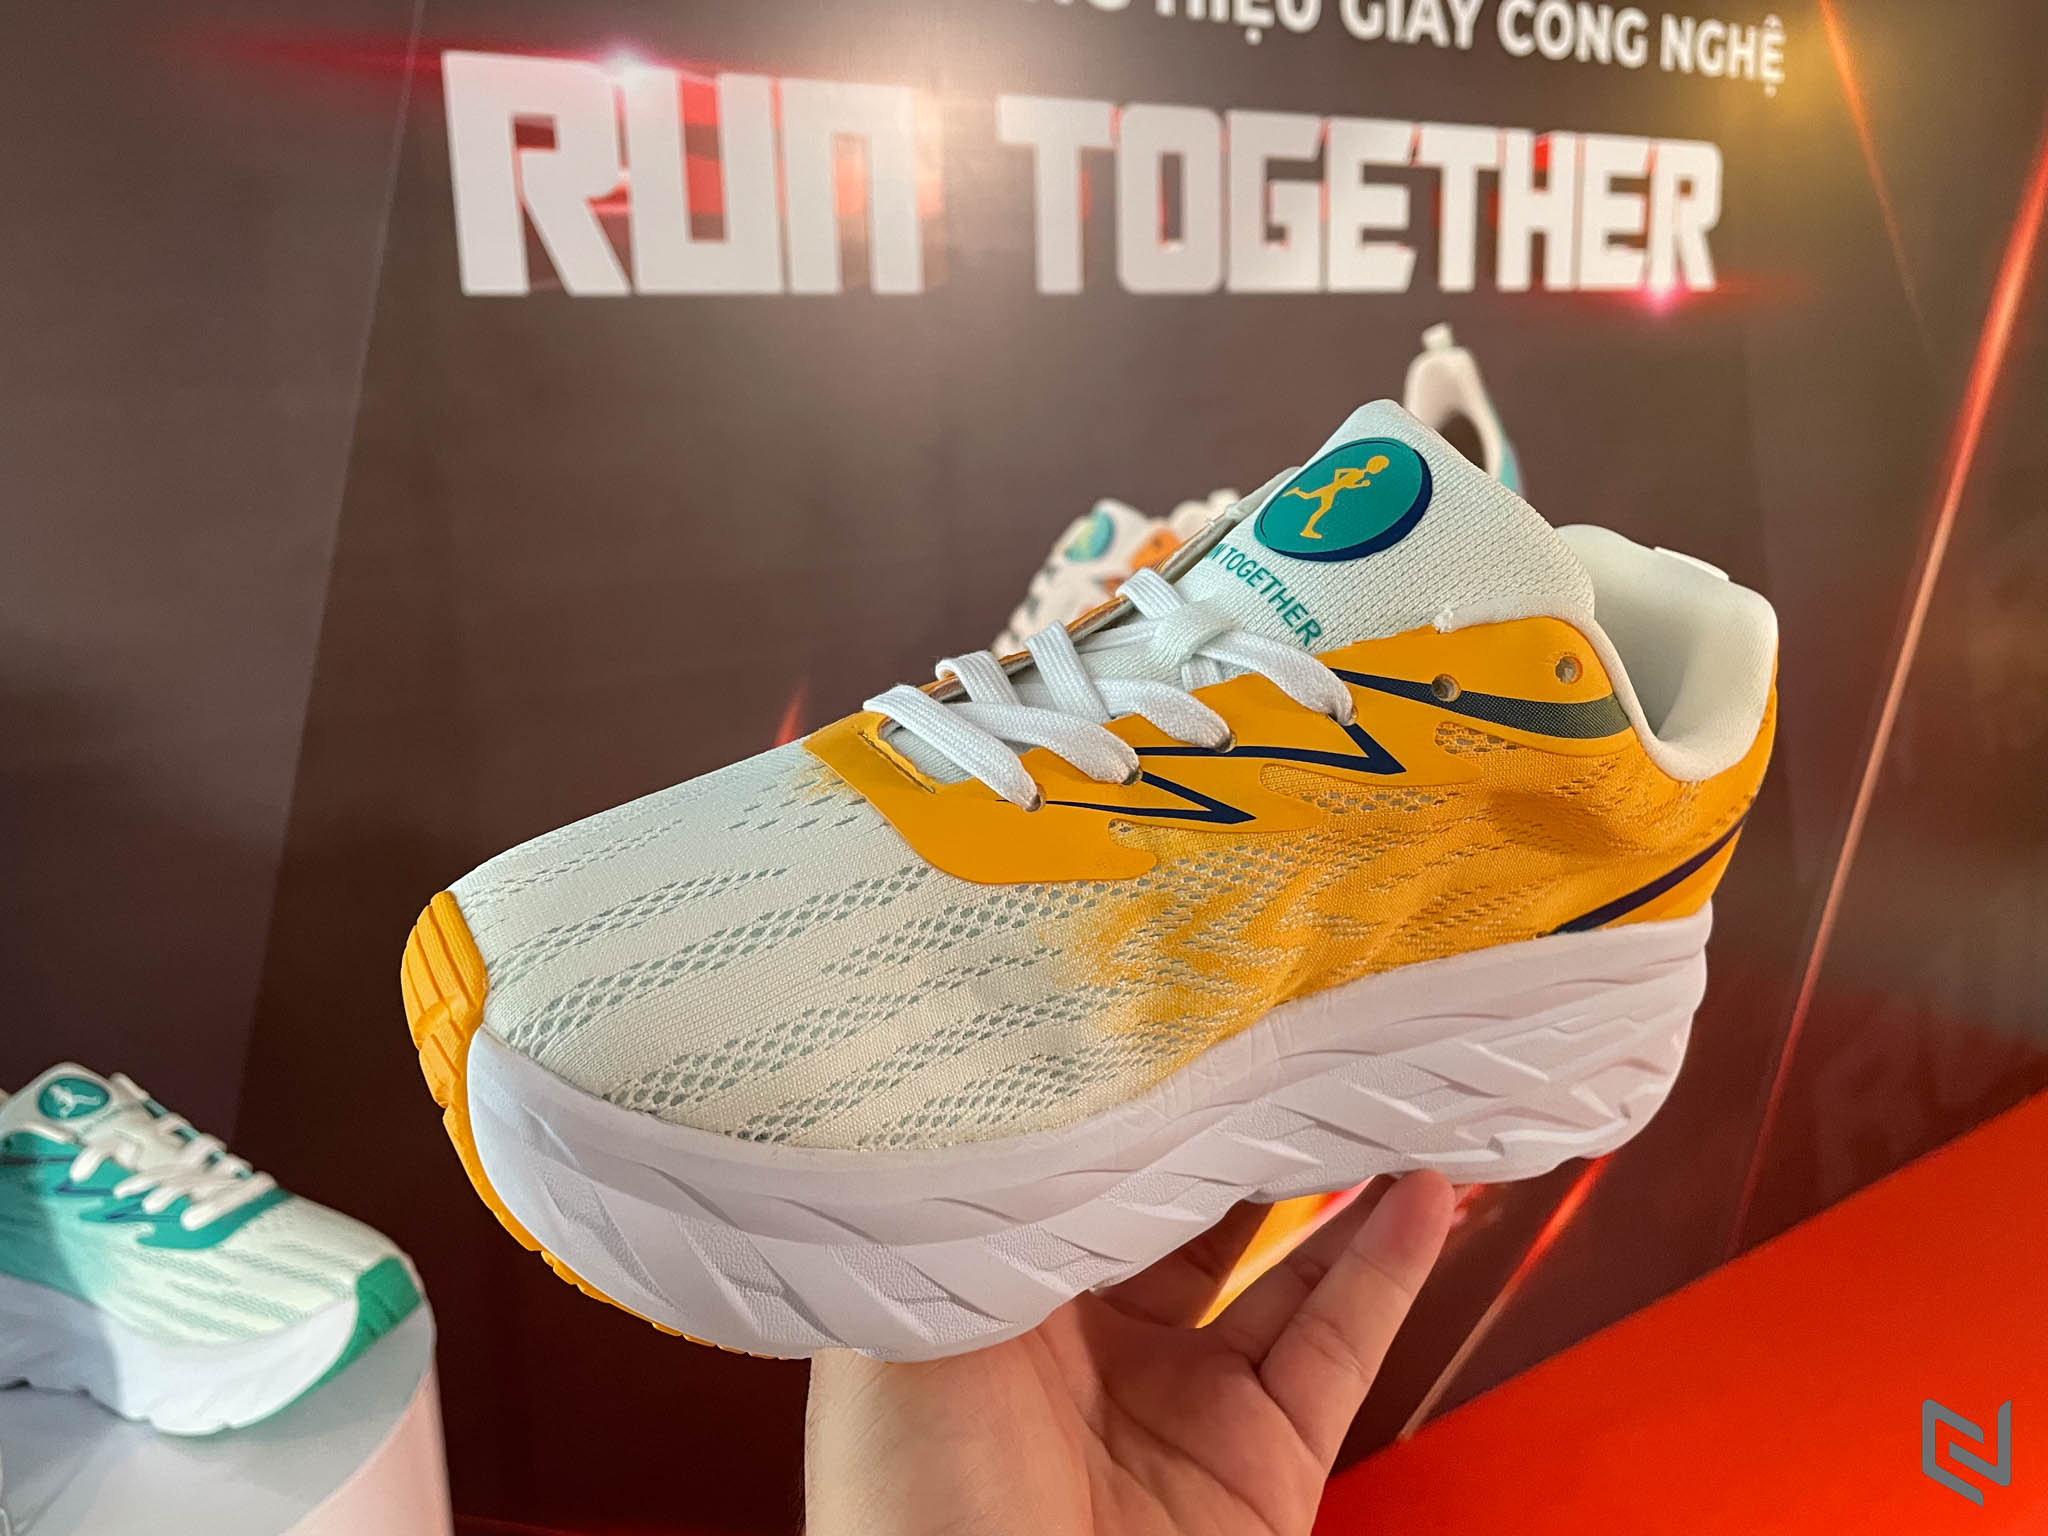 Ra mắt Giày công nghệ gắn chip NFC thương hiệu RUN Together cho người yêu chạy bộ